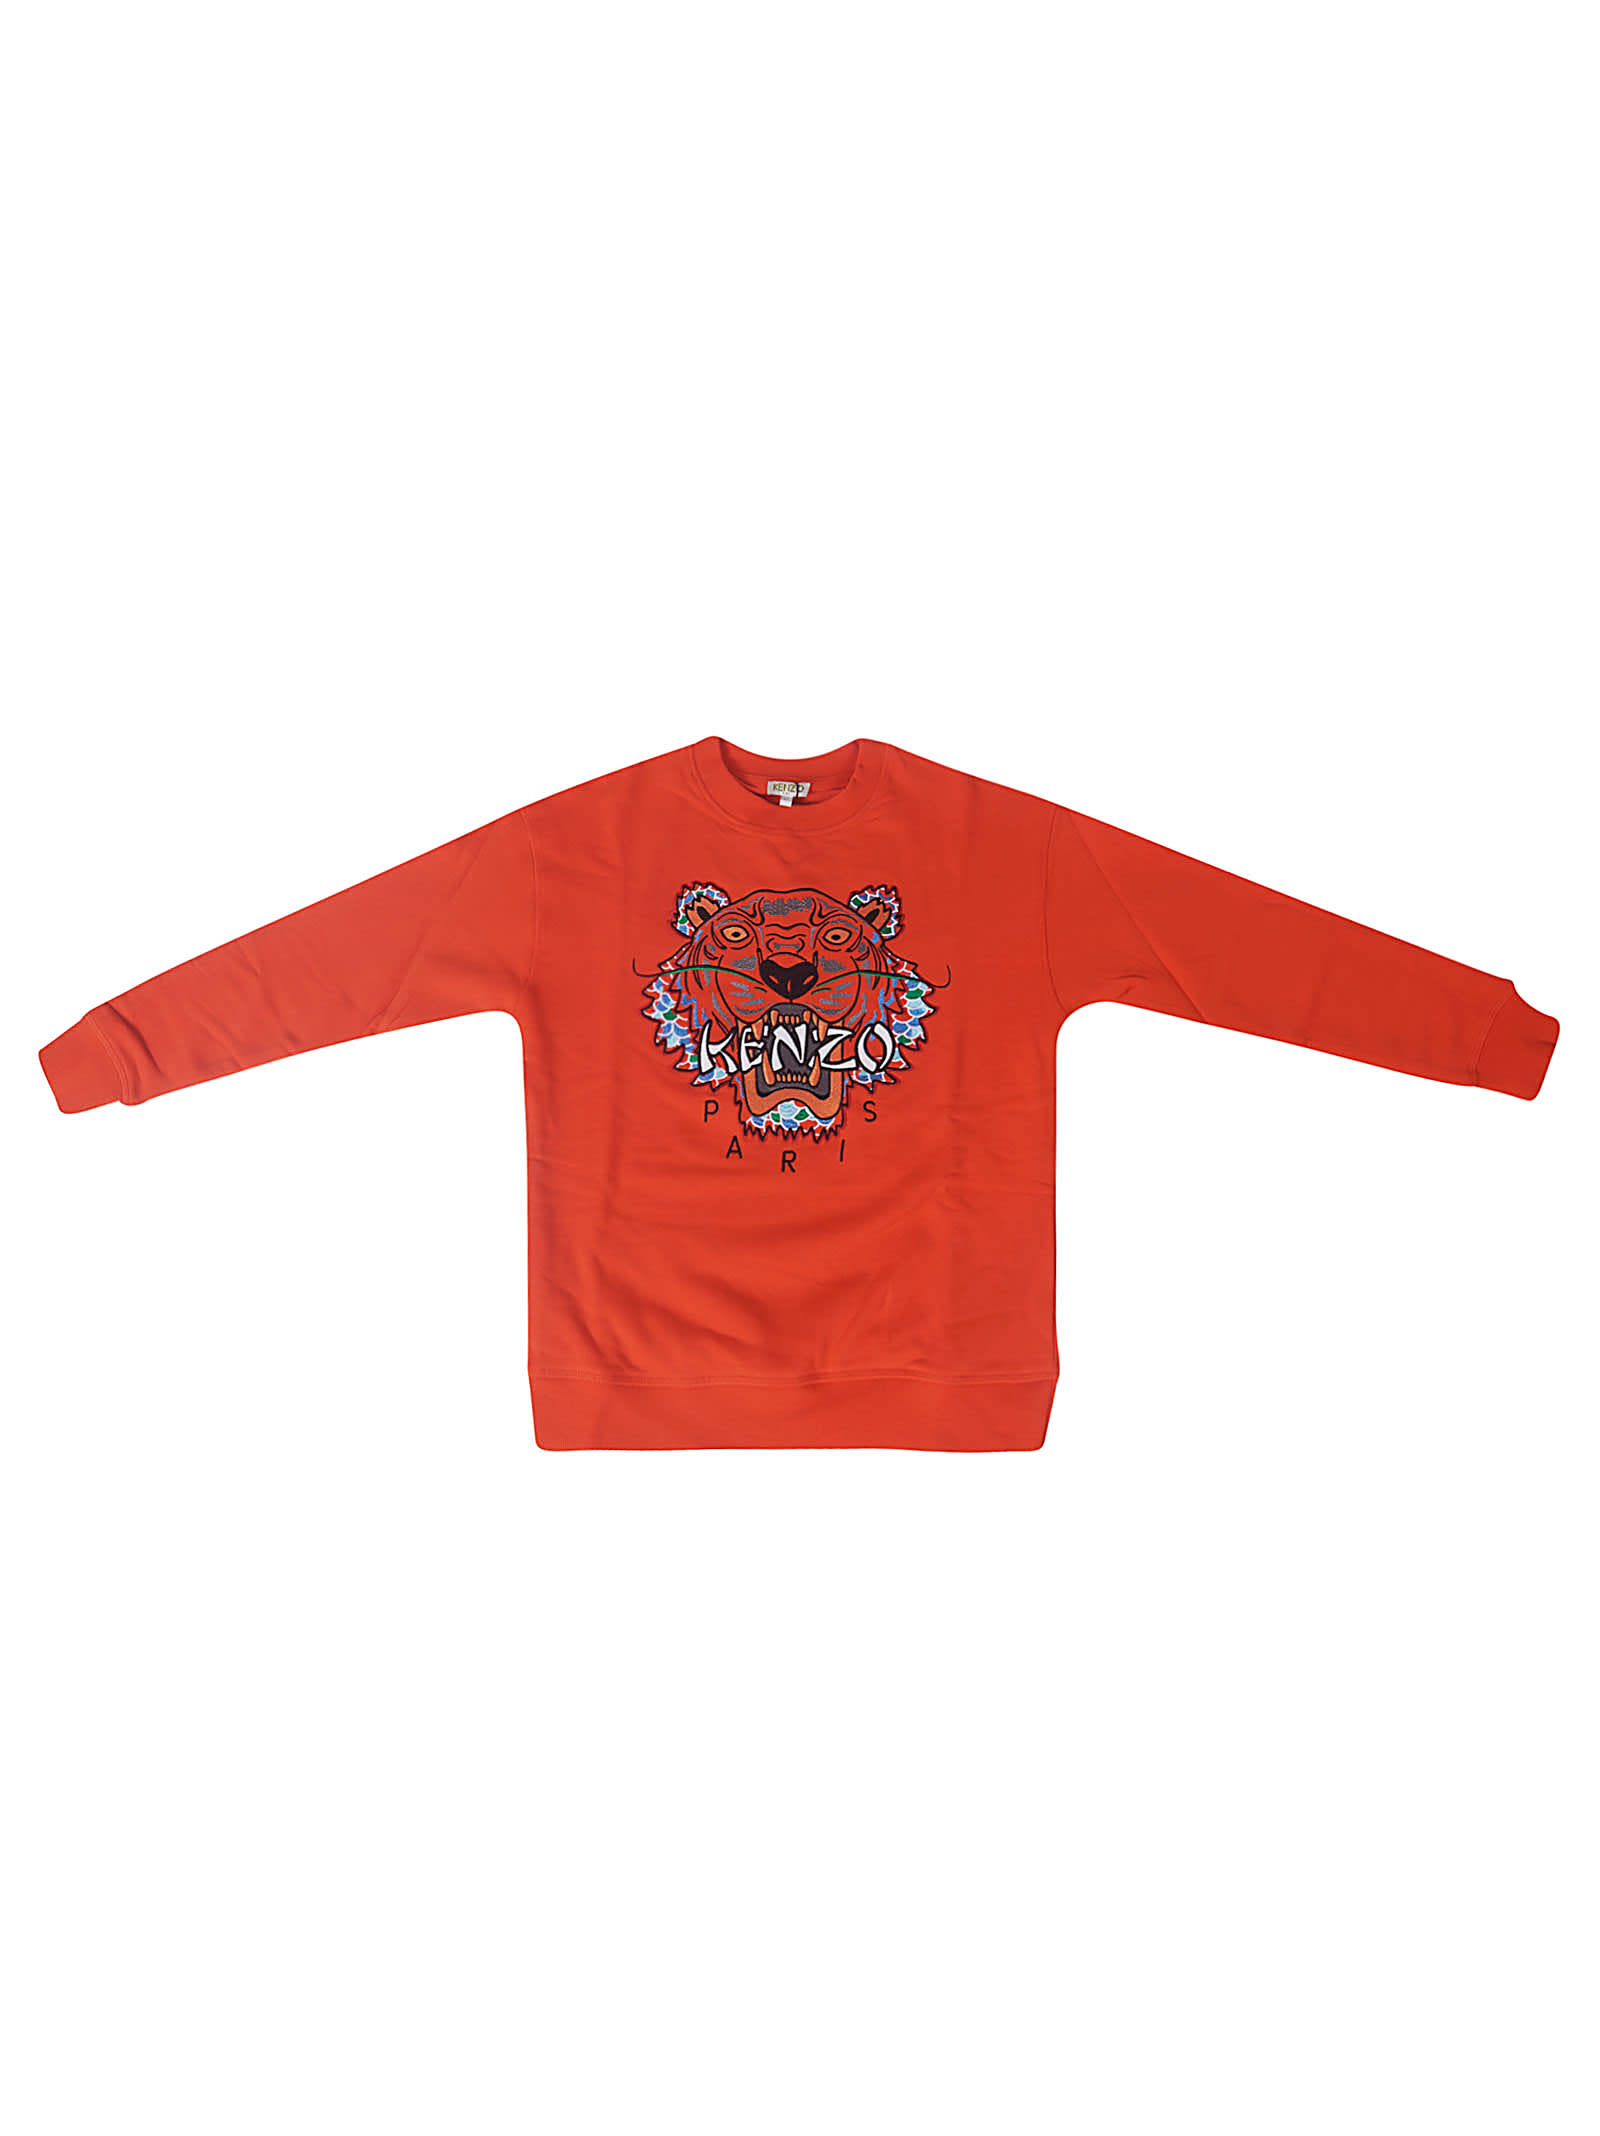 kenzo orange sweatshirt